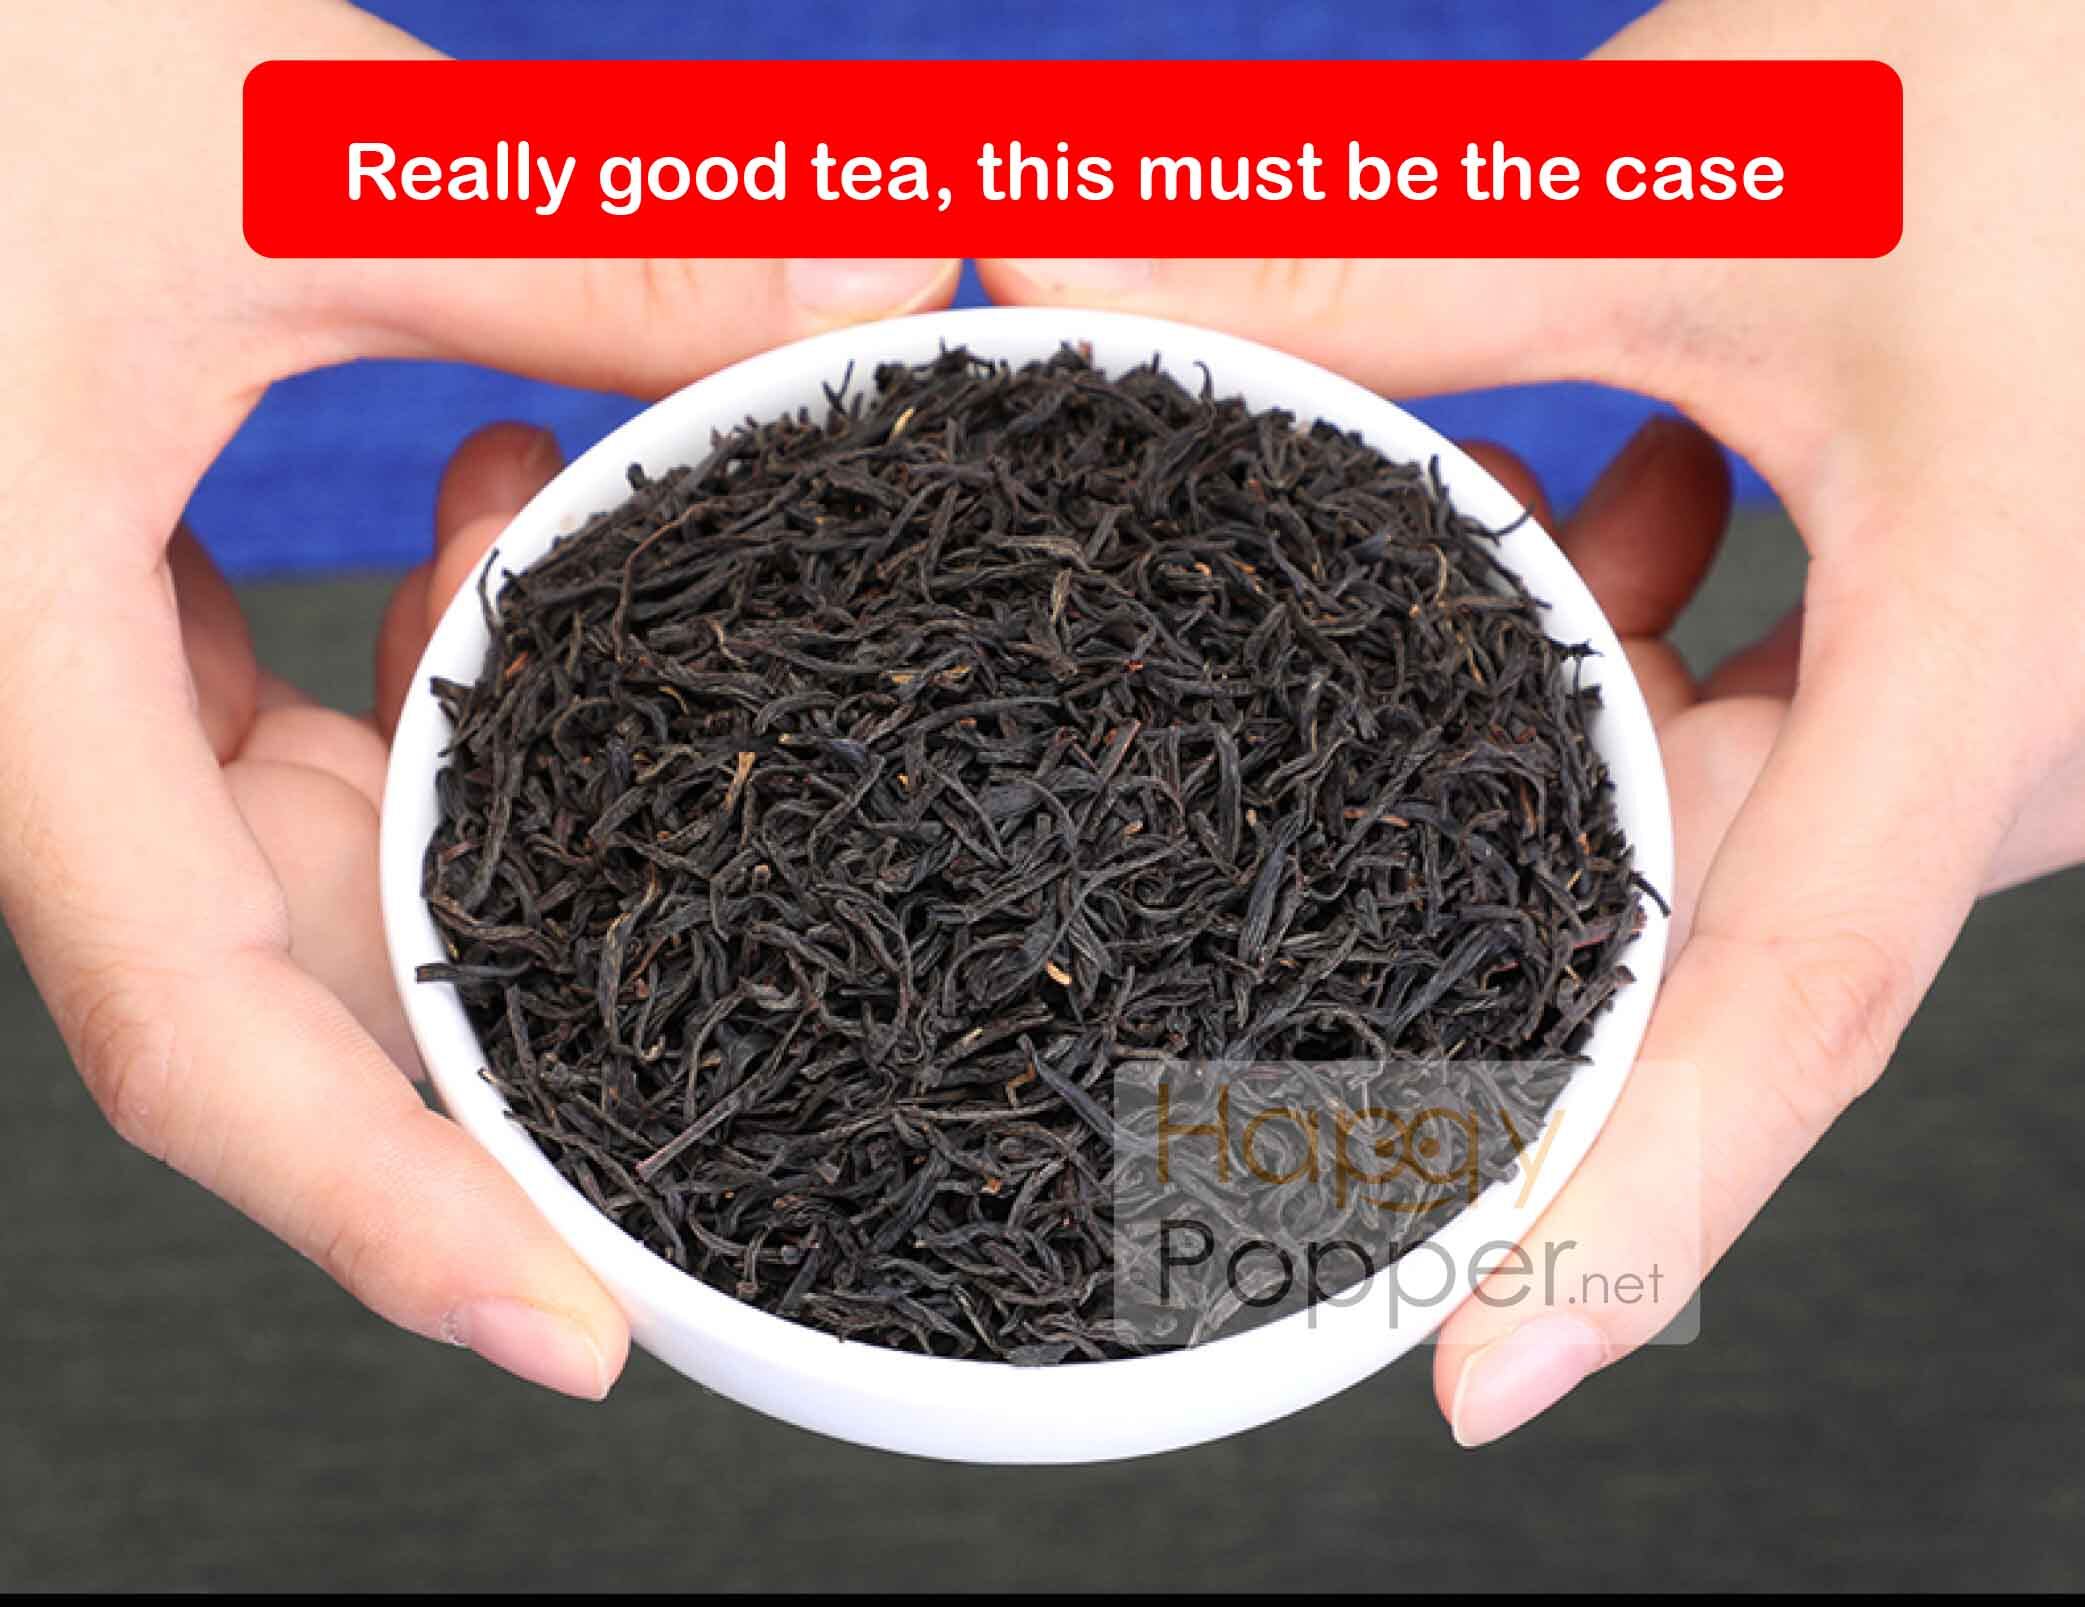 happypopper - Taiwan Assam Black Tea 600 g ( 1 pkt) (BT-TE001)